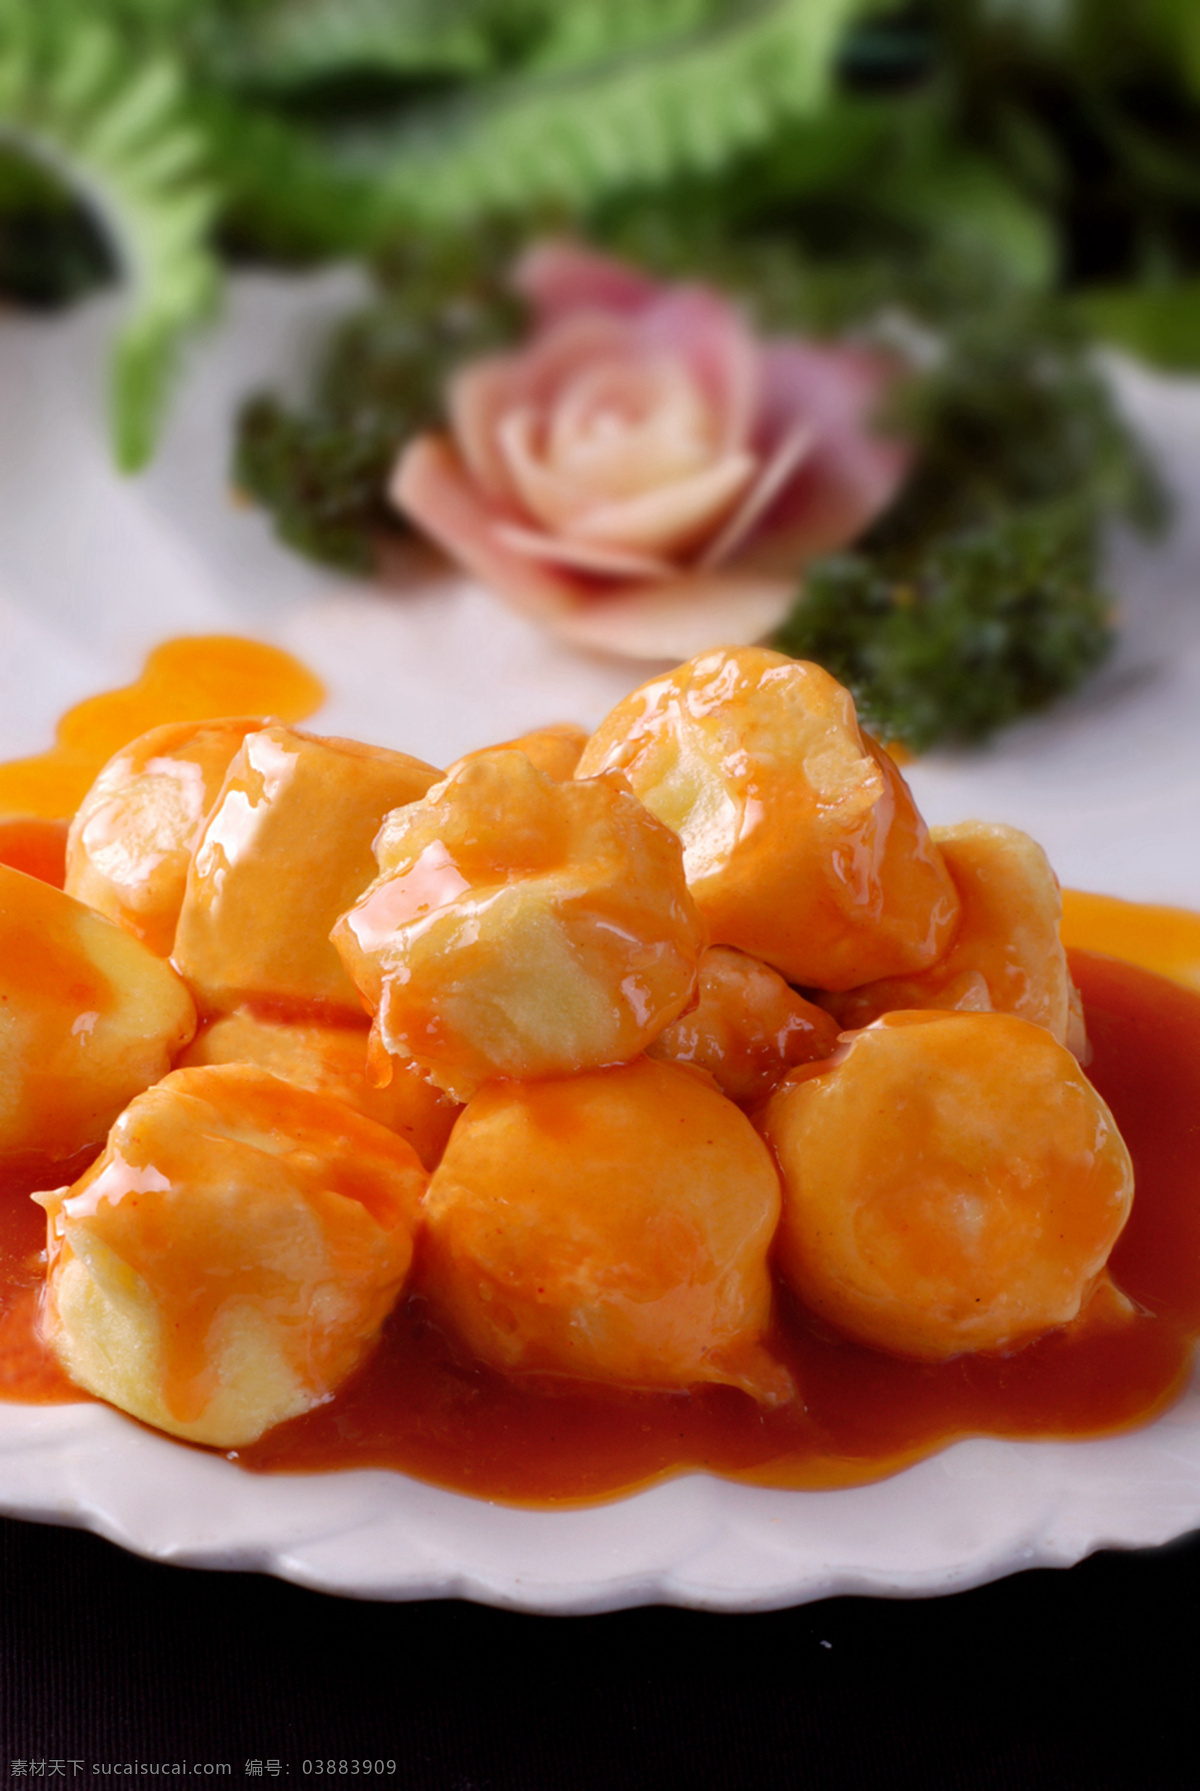 脆皮日本豆腐 美食 传统美食 餐饮美食 高清菜谱用图